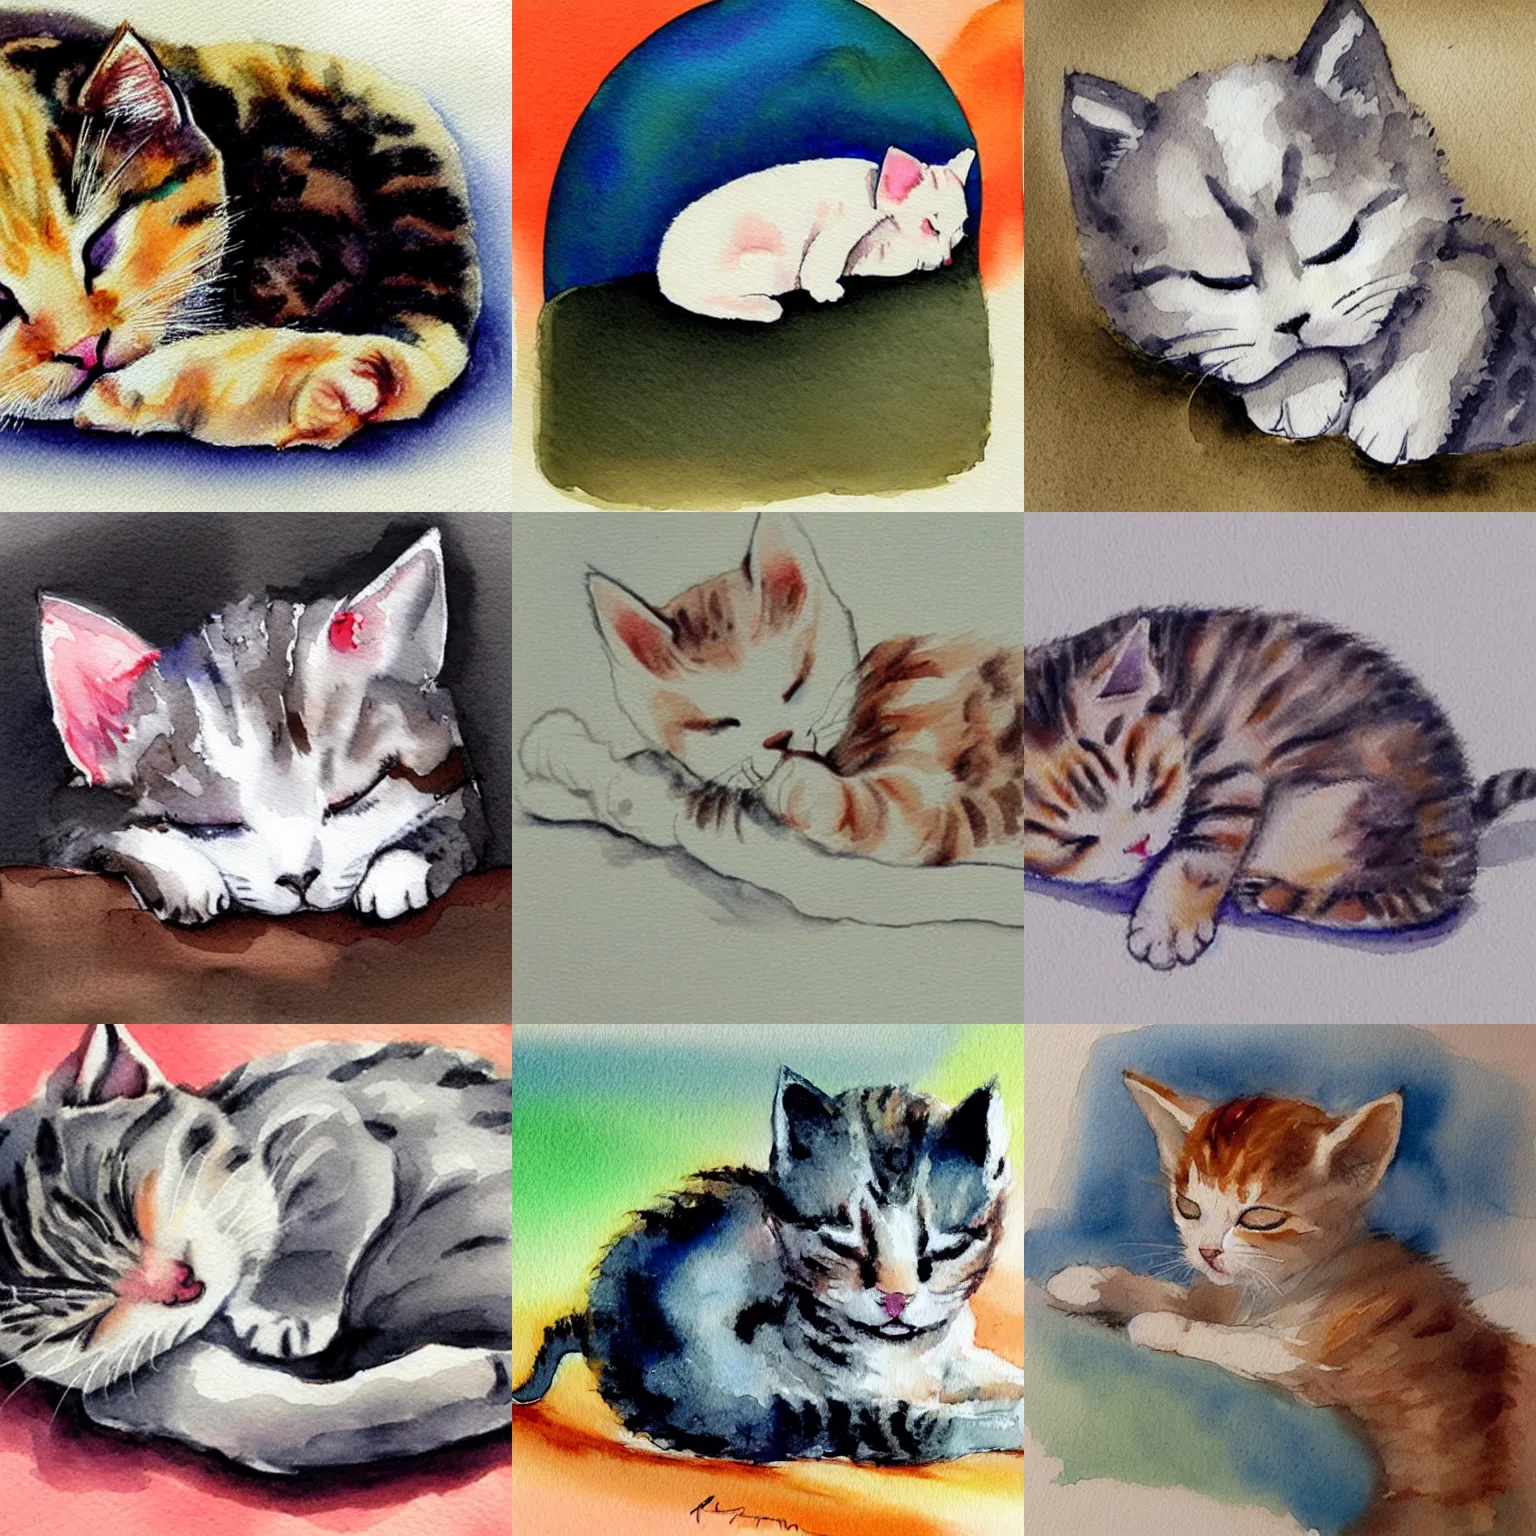 Prompt: simplistic painting of kitten sleeping, watercolor, cute